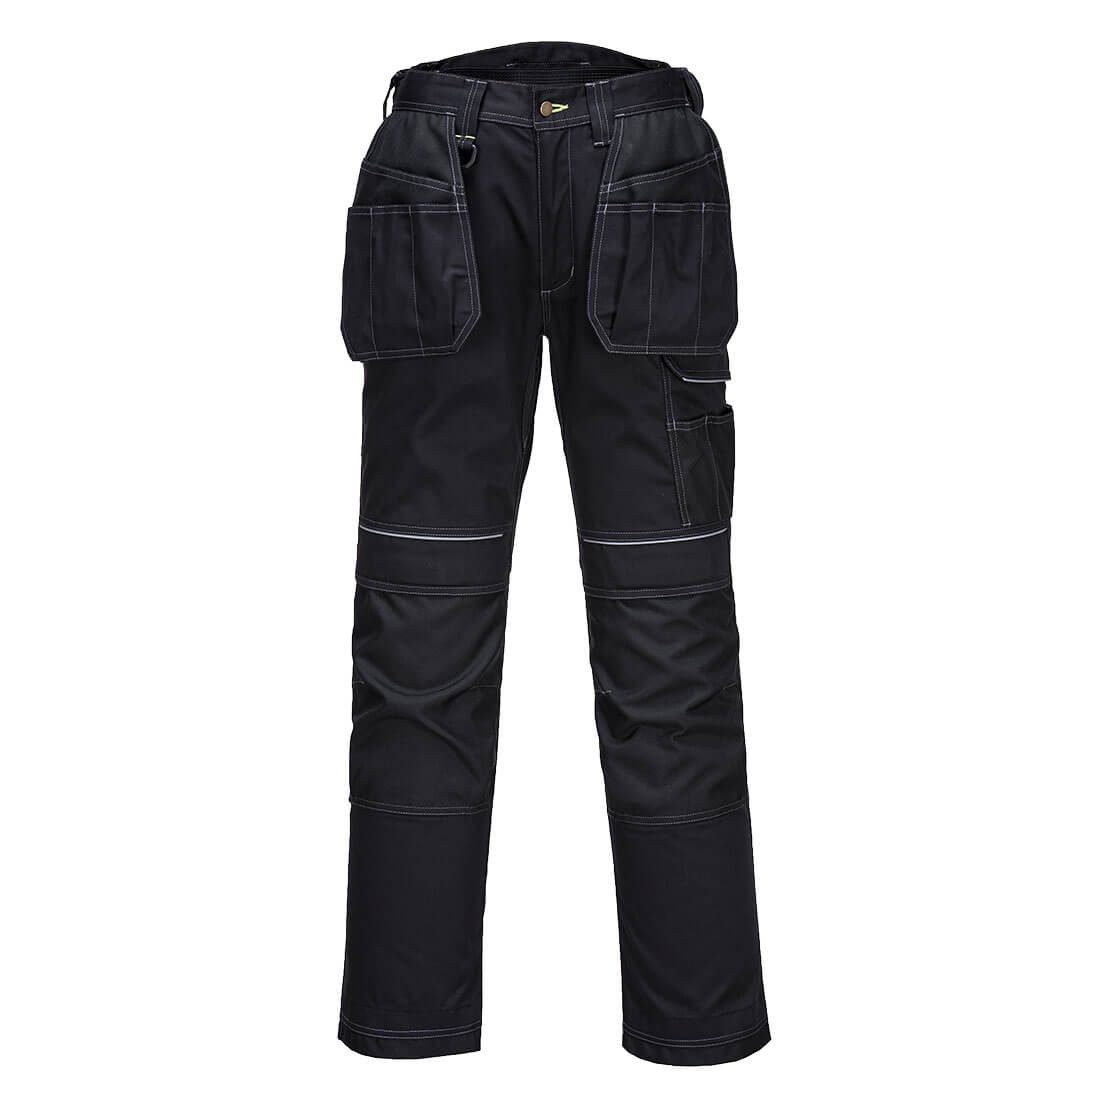 Pantalone PW3 Stretch Holster Work - Abbigliamento di protezione